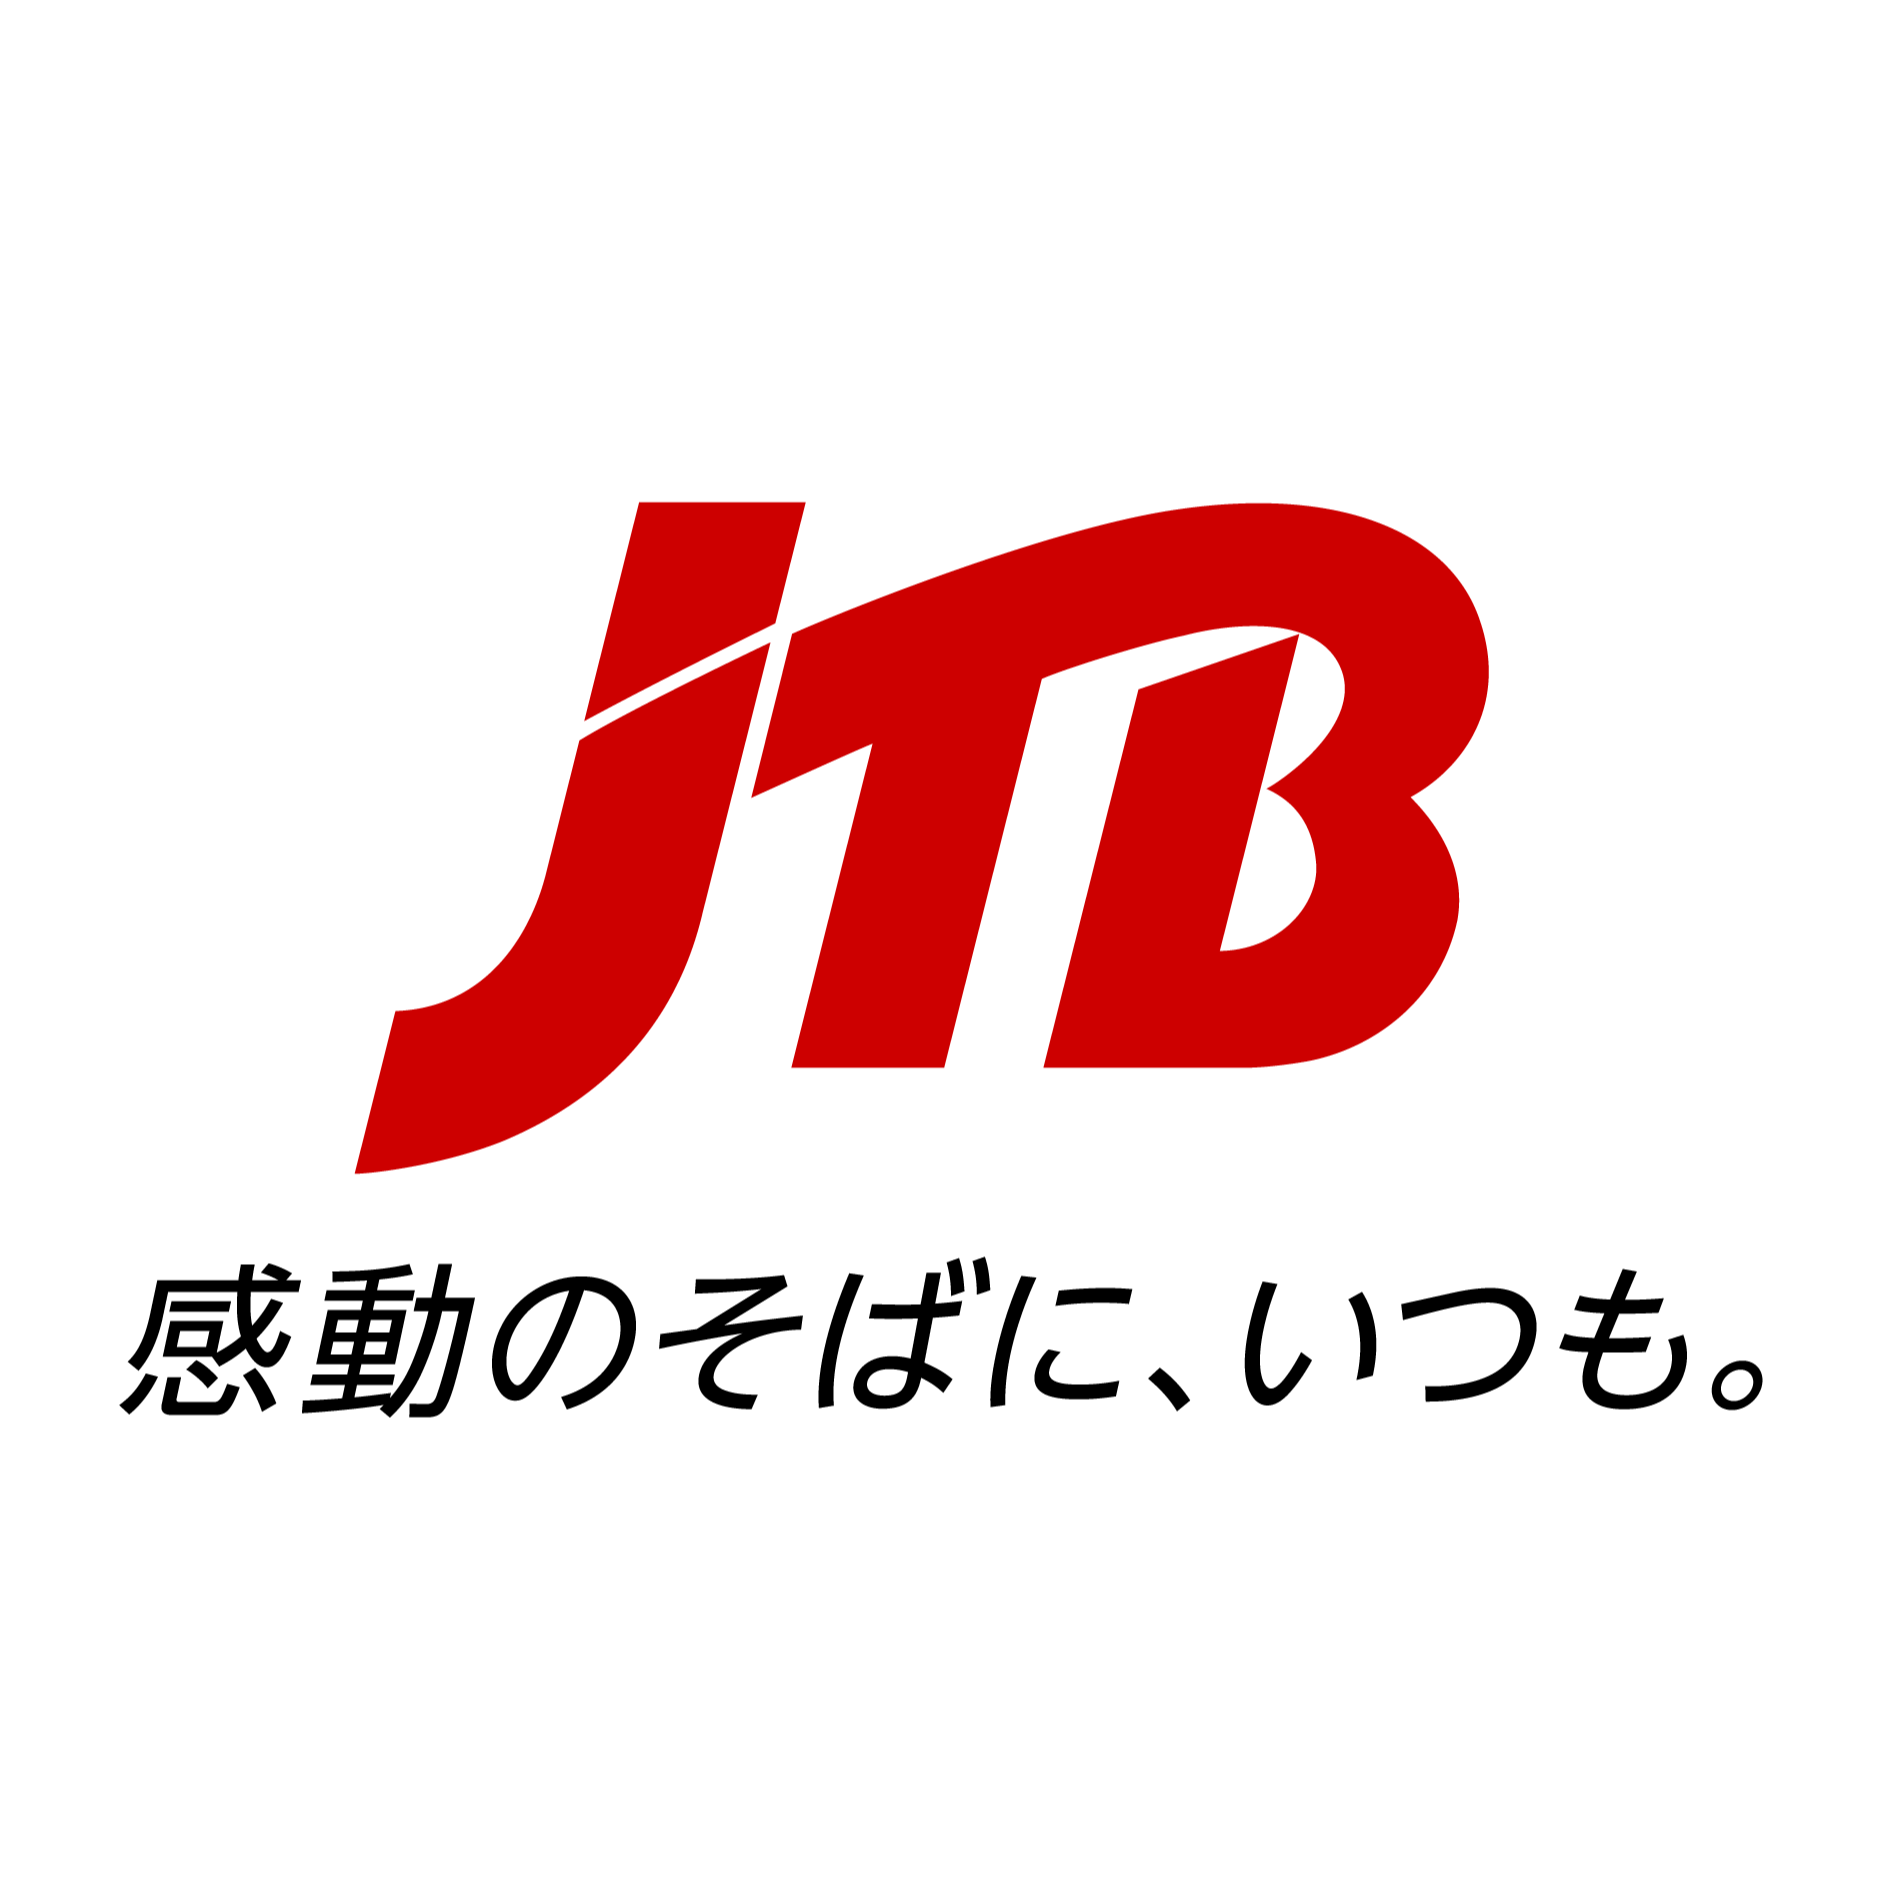 JTB 神戸支店 Logo